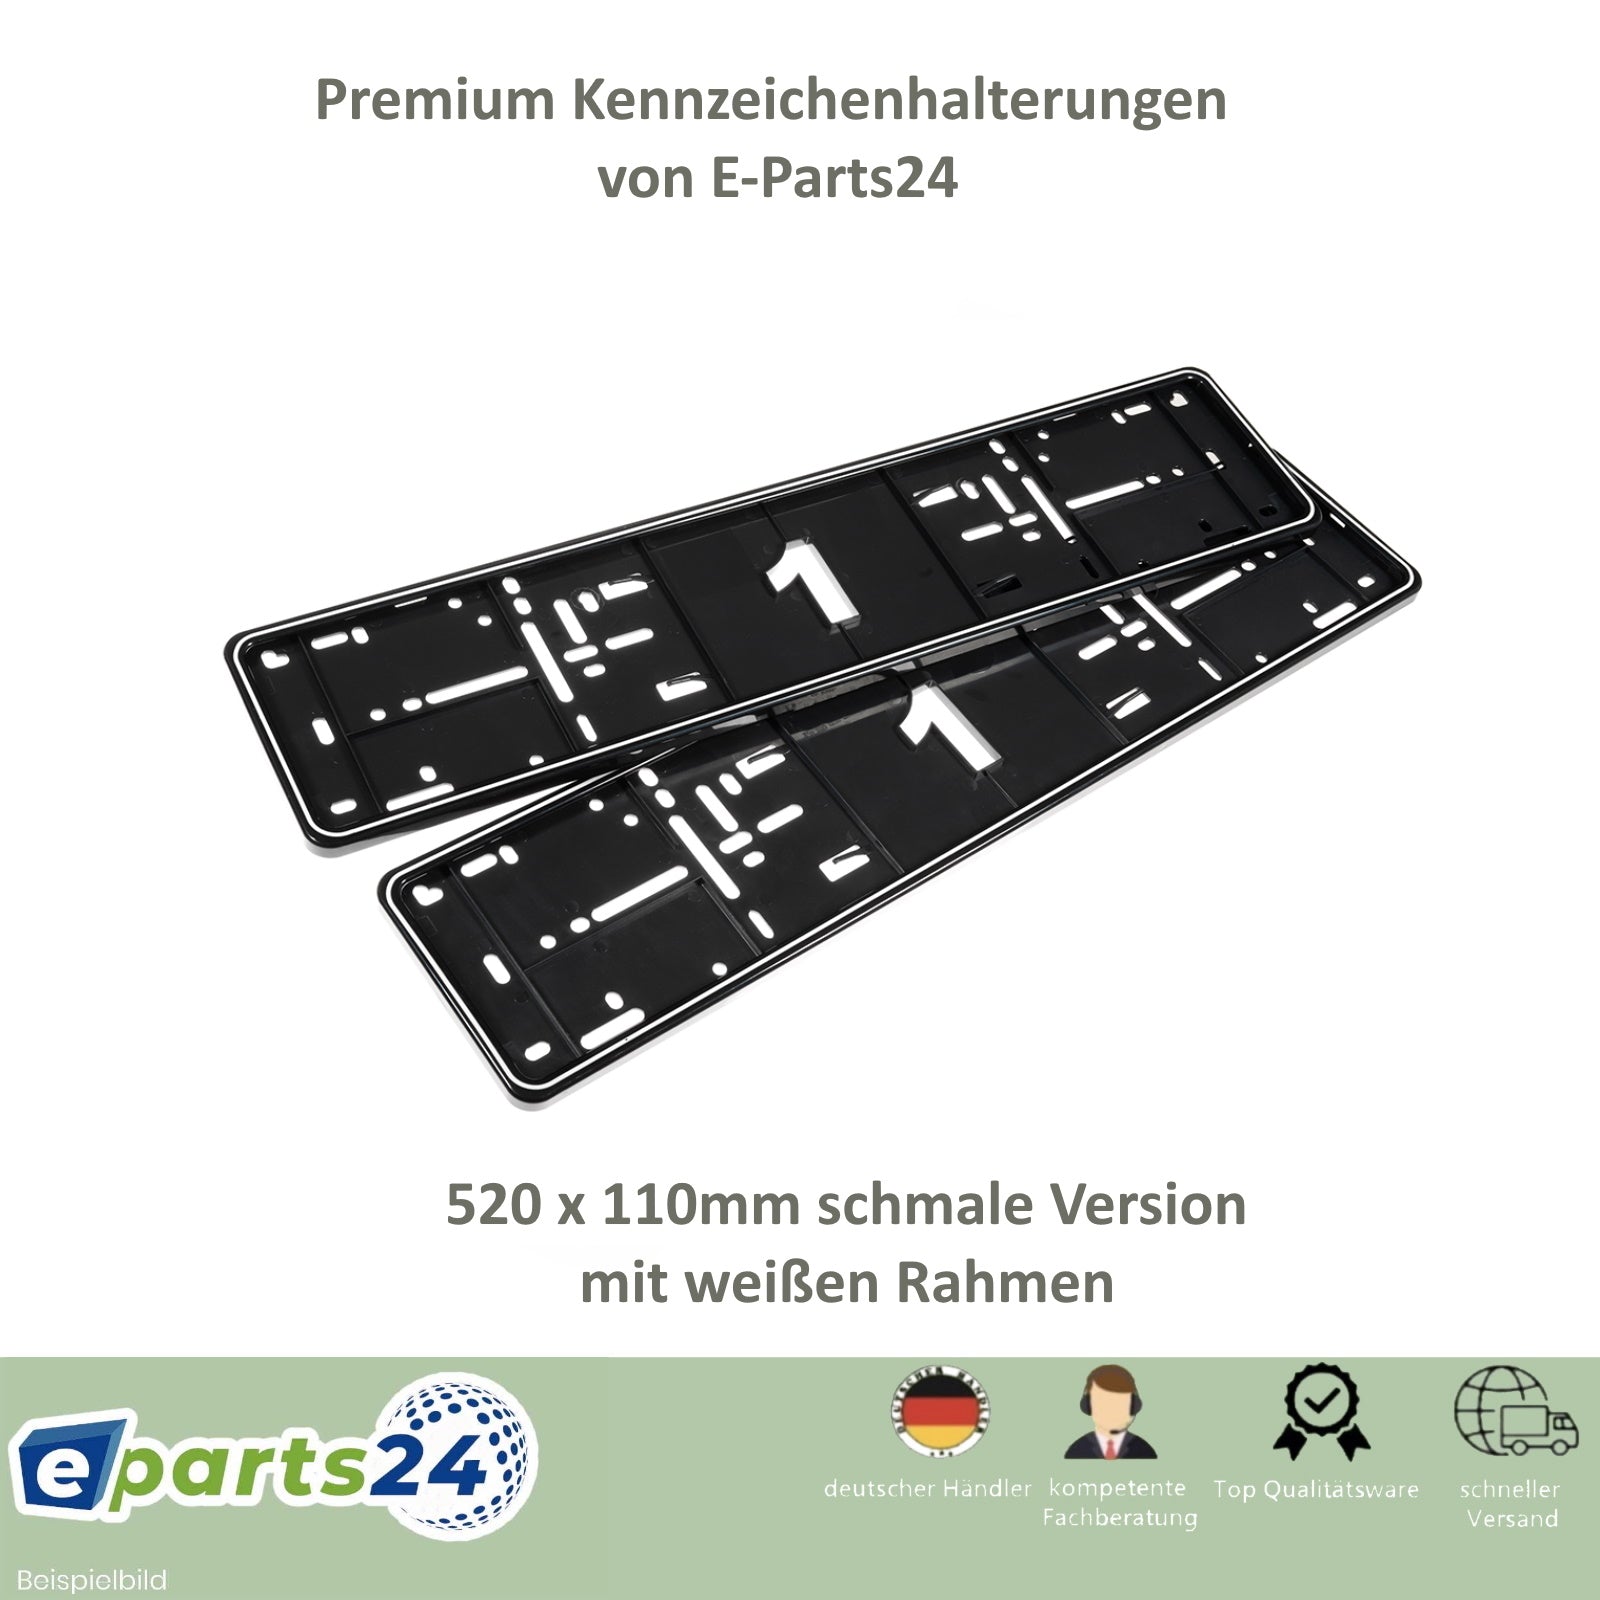 2X STÜCK KURZ Kennzeichenhalter Für Kurze Kennzeichen im Format 420 x 110  mm 👍 EUR 14,99 - PicClick DE